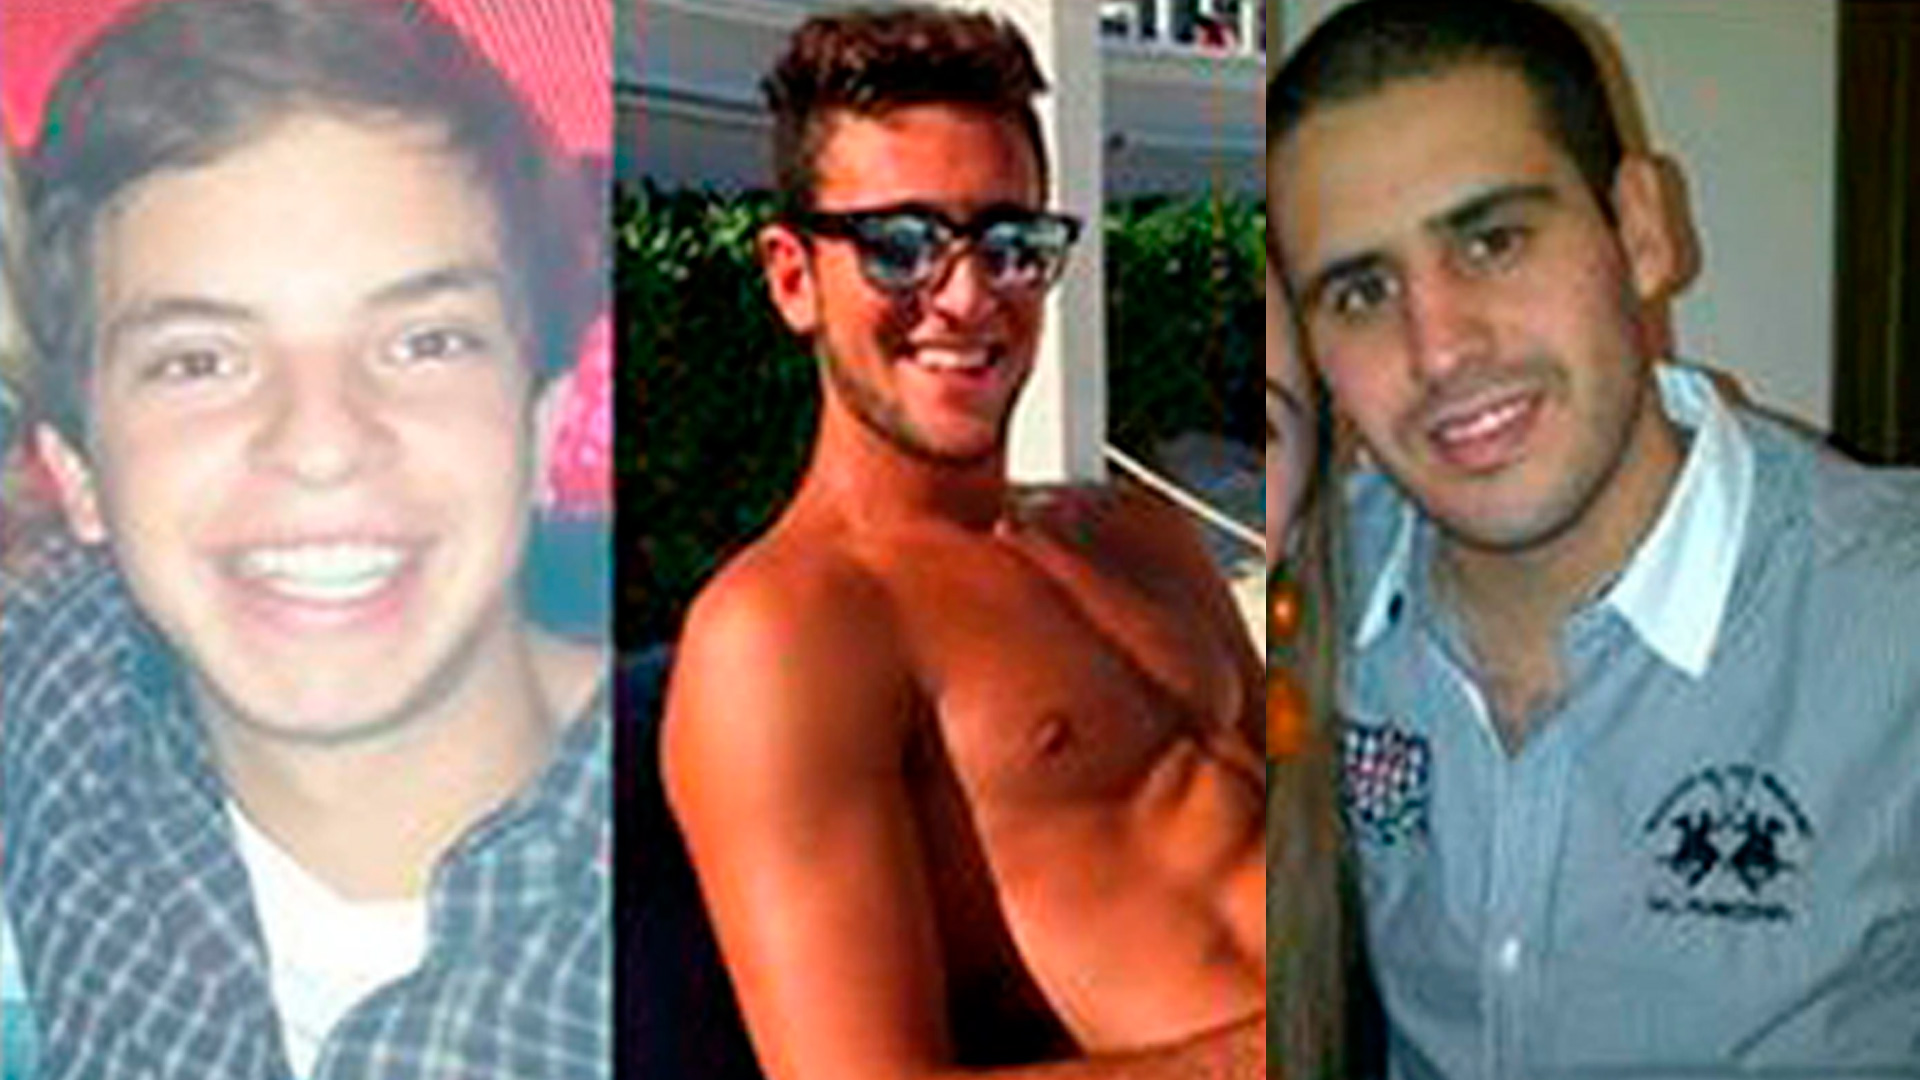 Leandro Del Villar, Luciano Mallemaci y Ezequiel Quintana, los tres jóvenes acusados de abuso sexual
